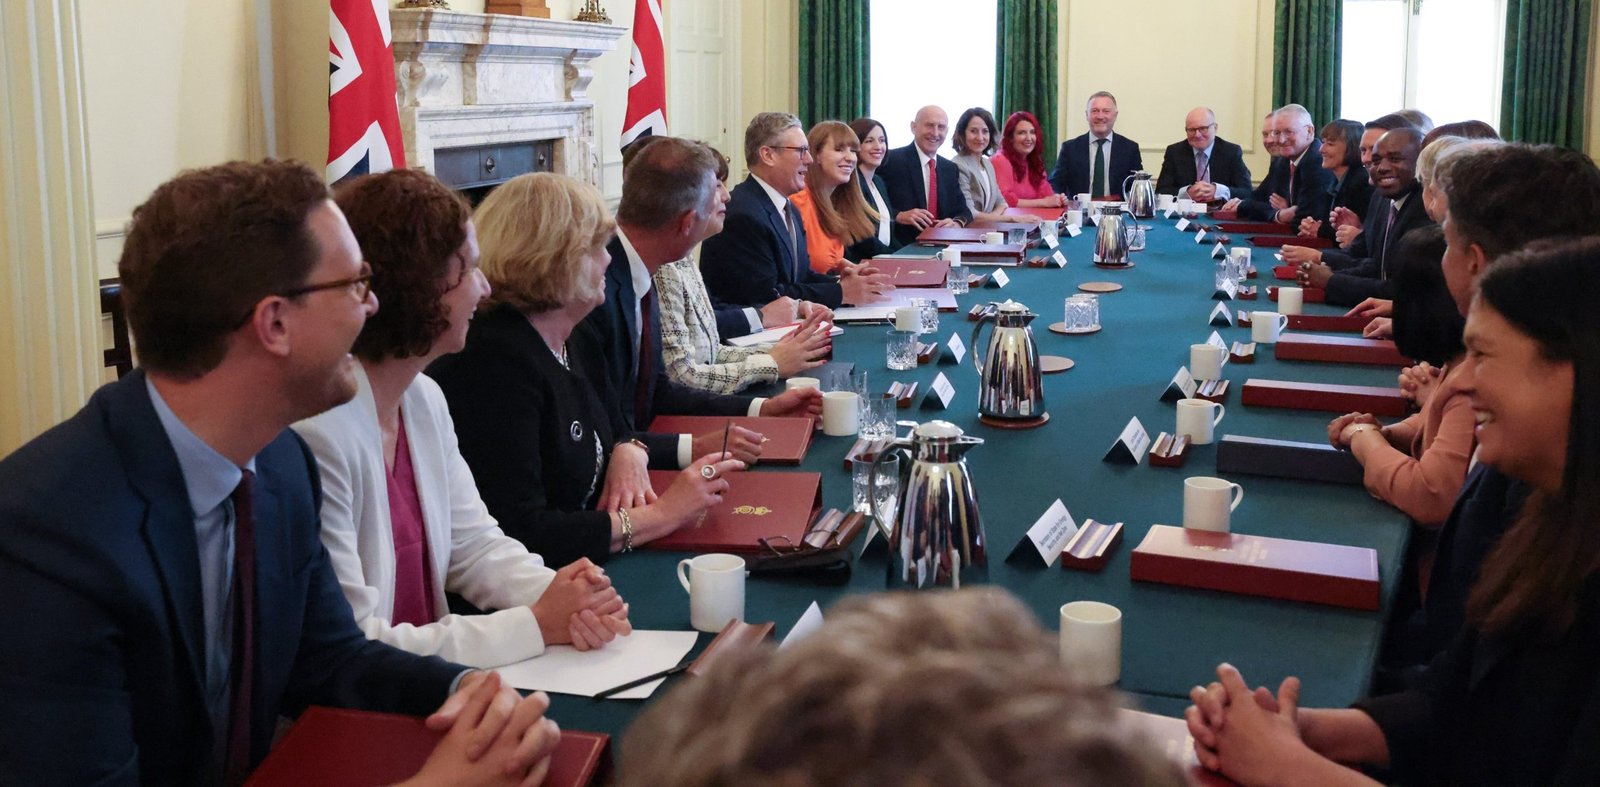 Σηκώνει τα μανίκια ο νέος Πρωθυπουργός της Βρετανίας «Τεράστιος όγκος δουλειάς που πρέπει να γίνει»